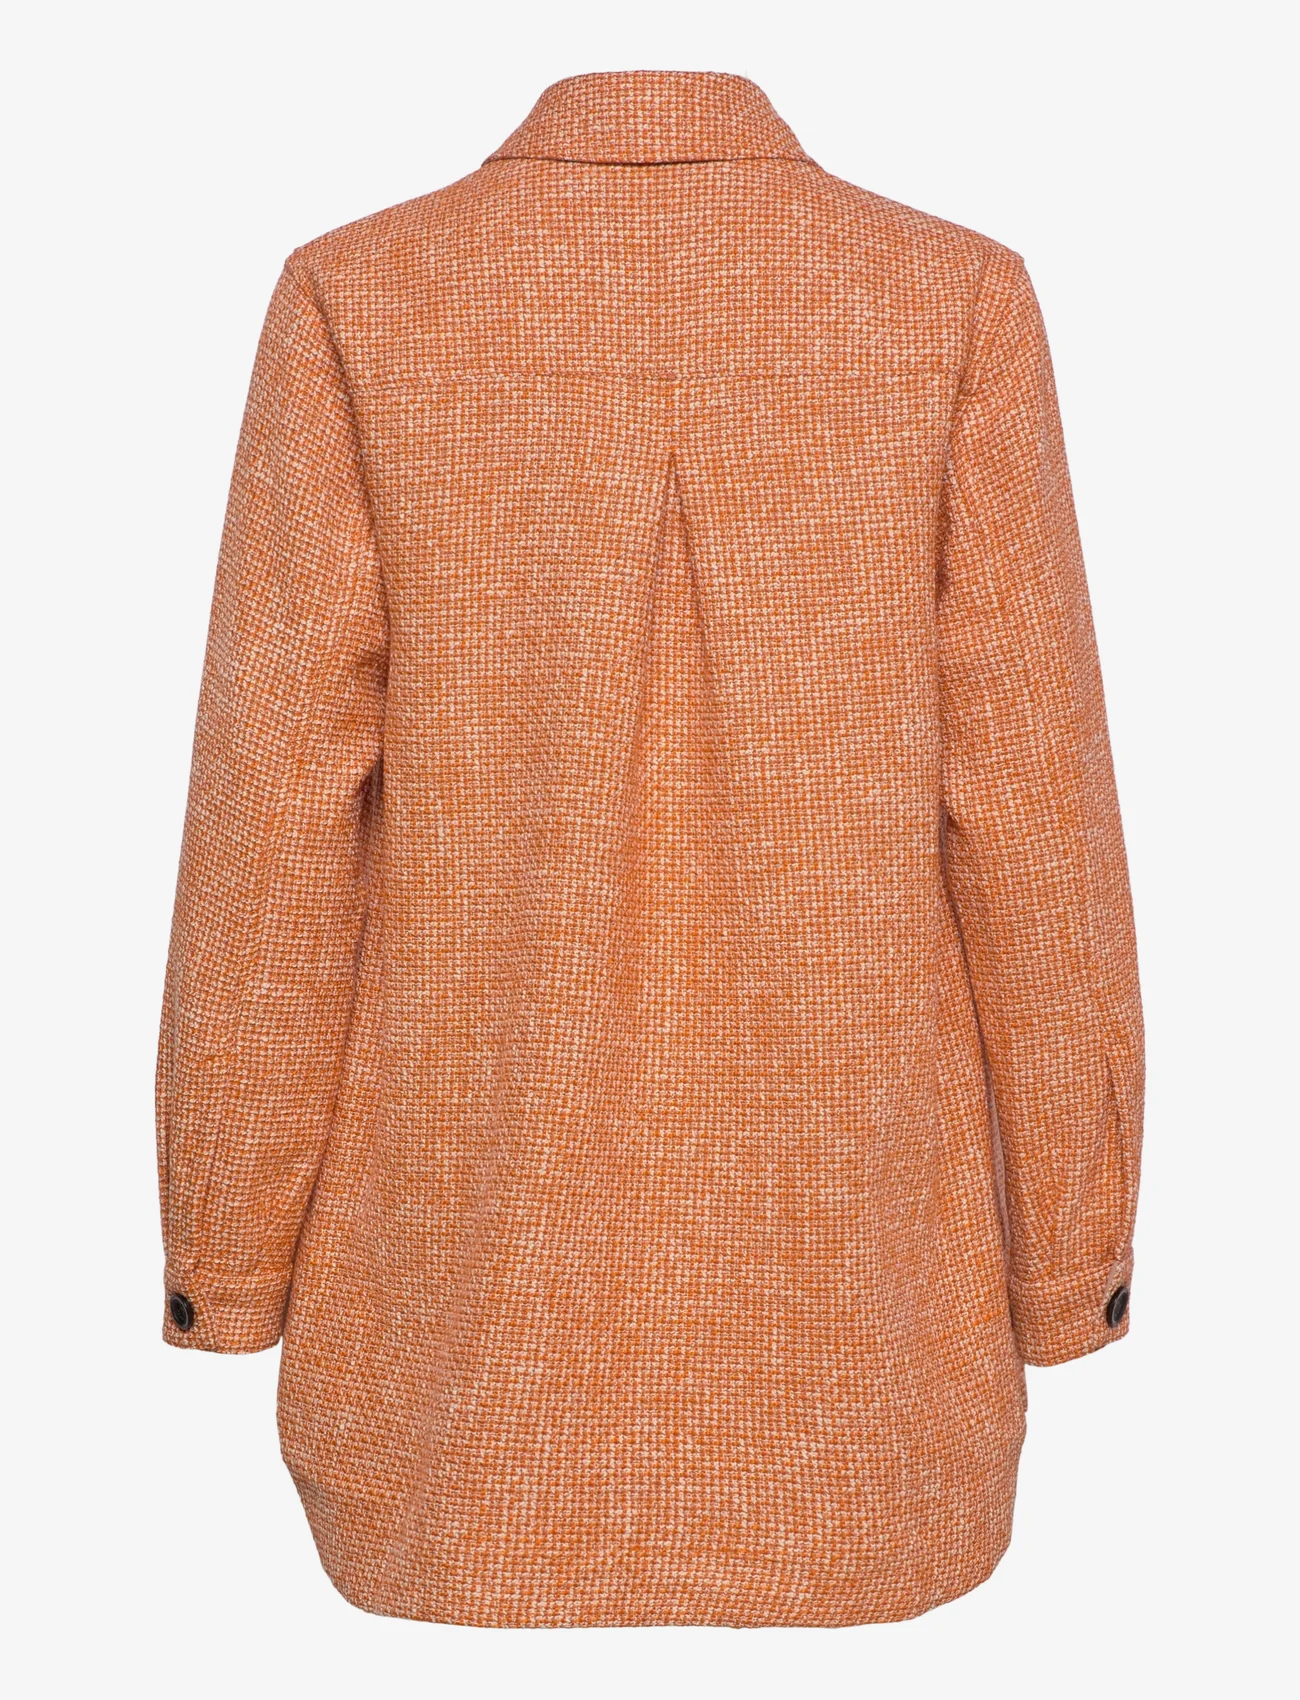 MOS MOSH - Rian Aletta Shirt Jacket - naised - harvest pumpkin melange - 1